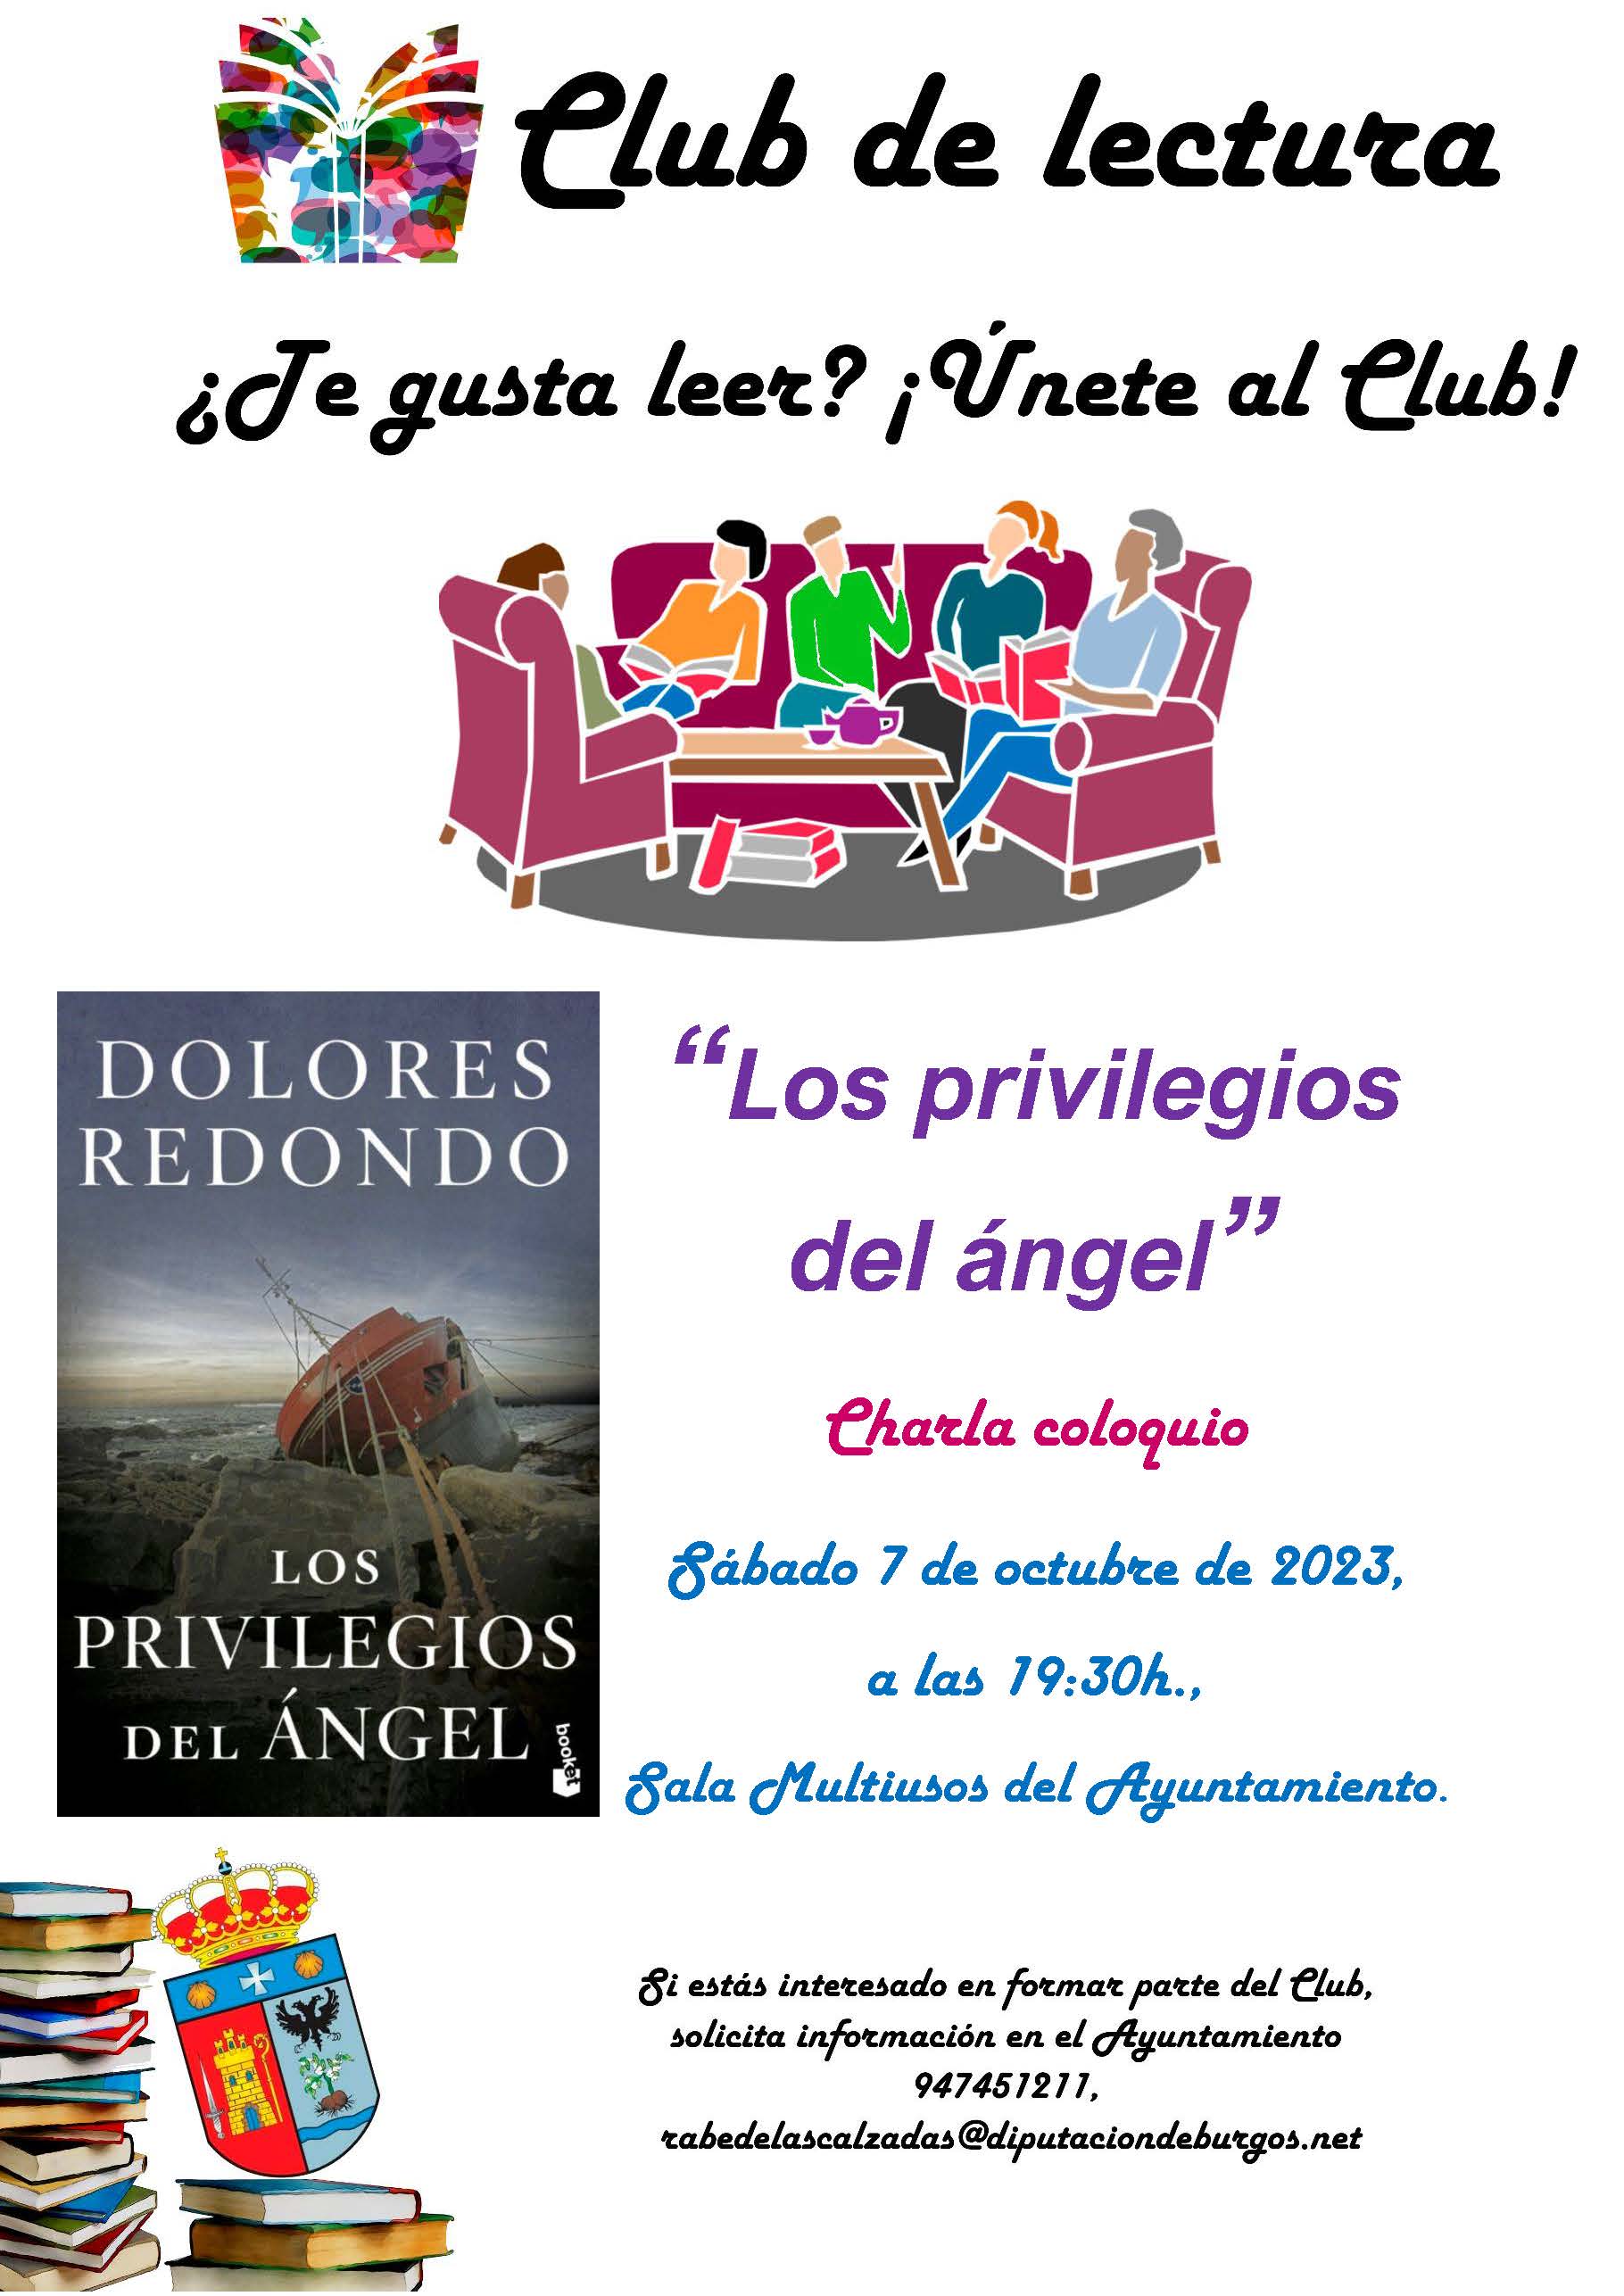 Club de lectura: "Los privilegios del ángel"